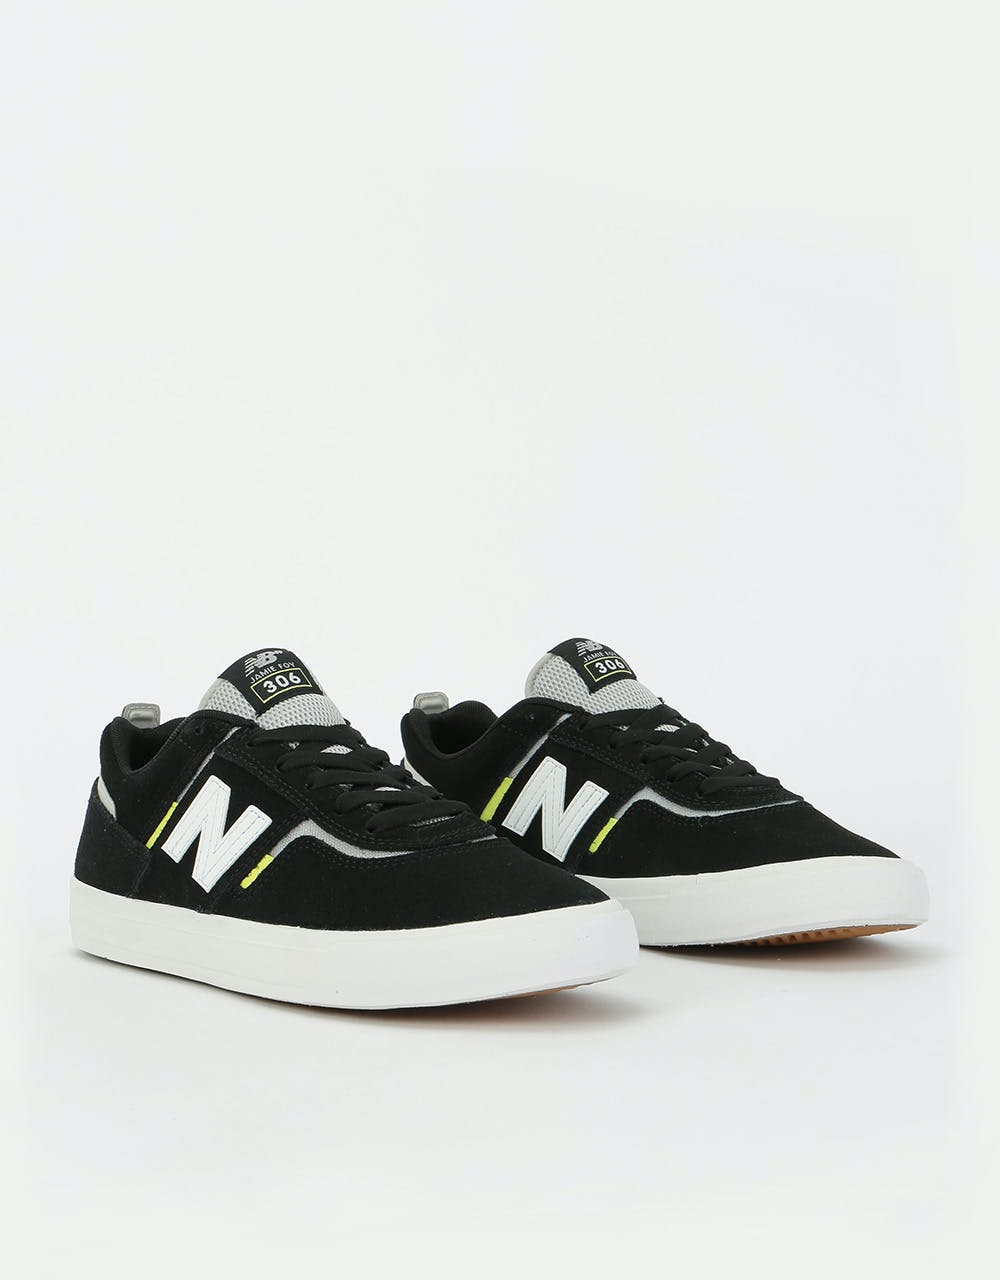 New Balance Numeric 306 Foy Skate Shoes - Black/White